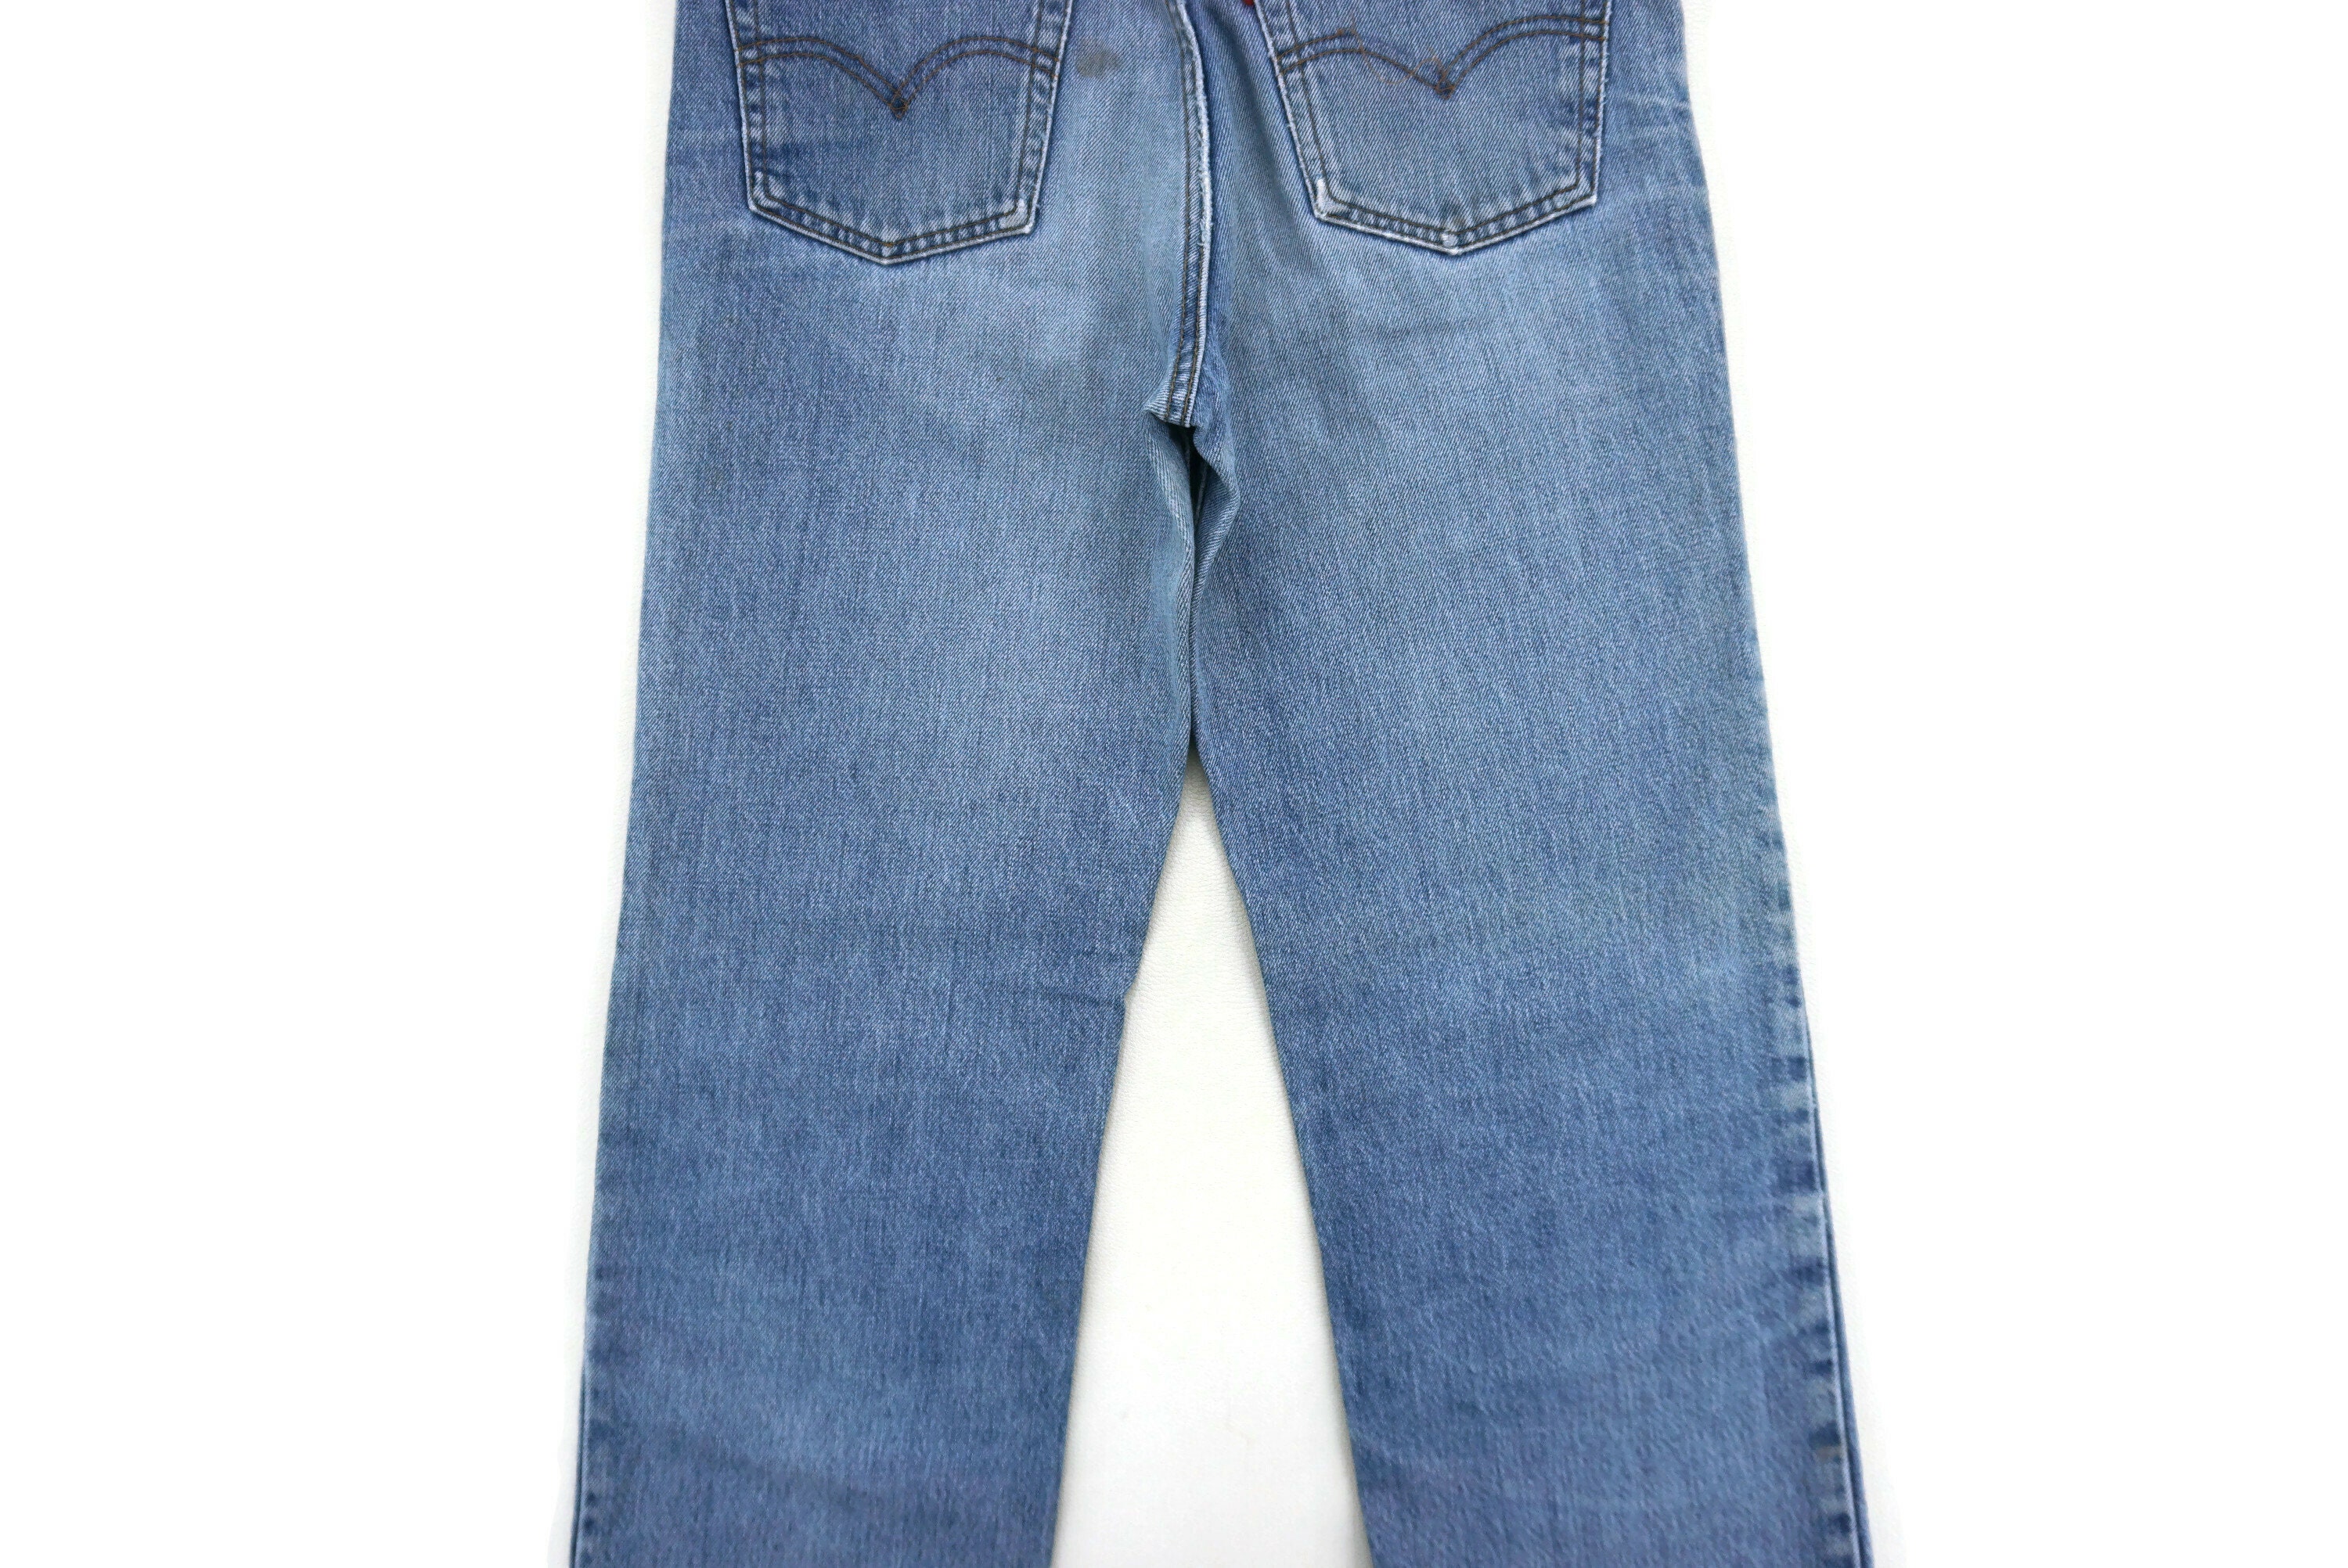 Levis 515 Jeans Size W29xl31.5 Levis 515 Denim Jeans Levis - Etsy UK